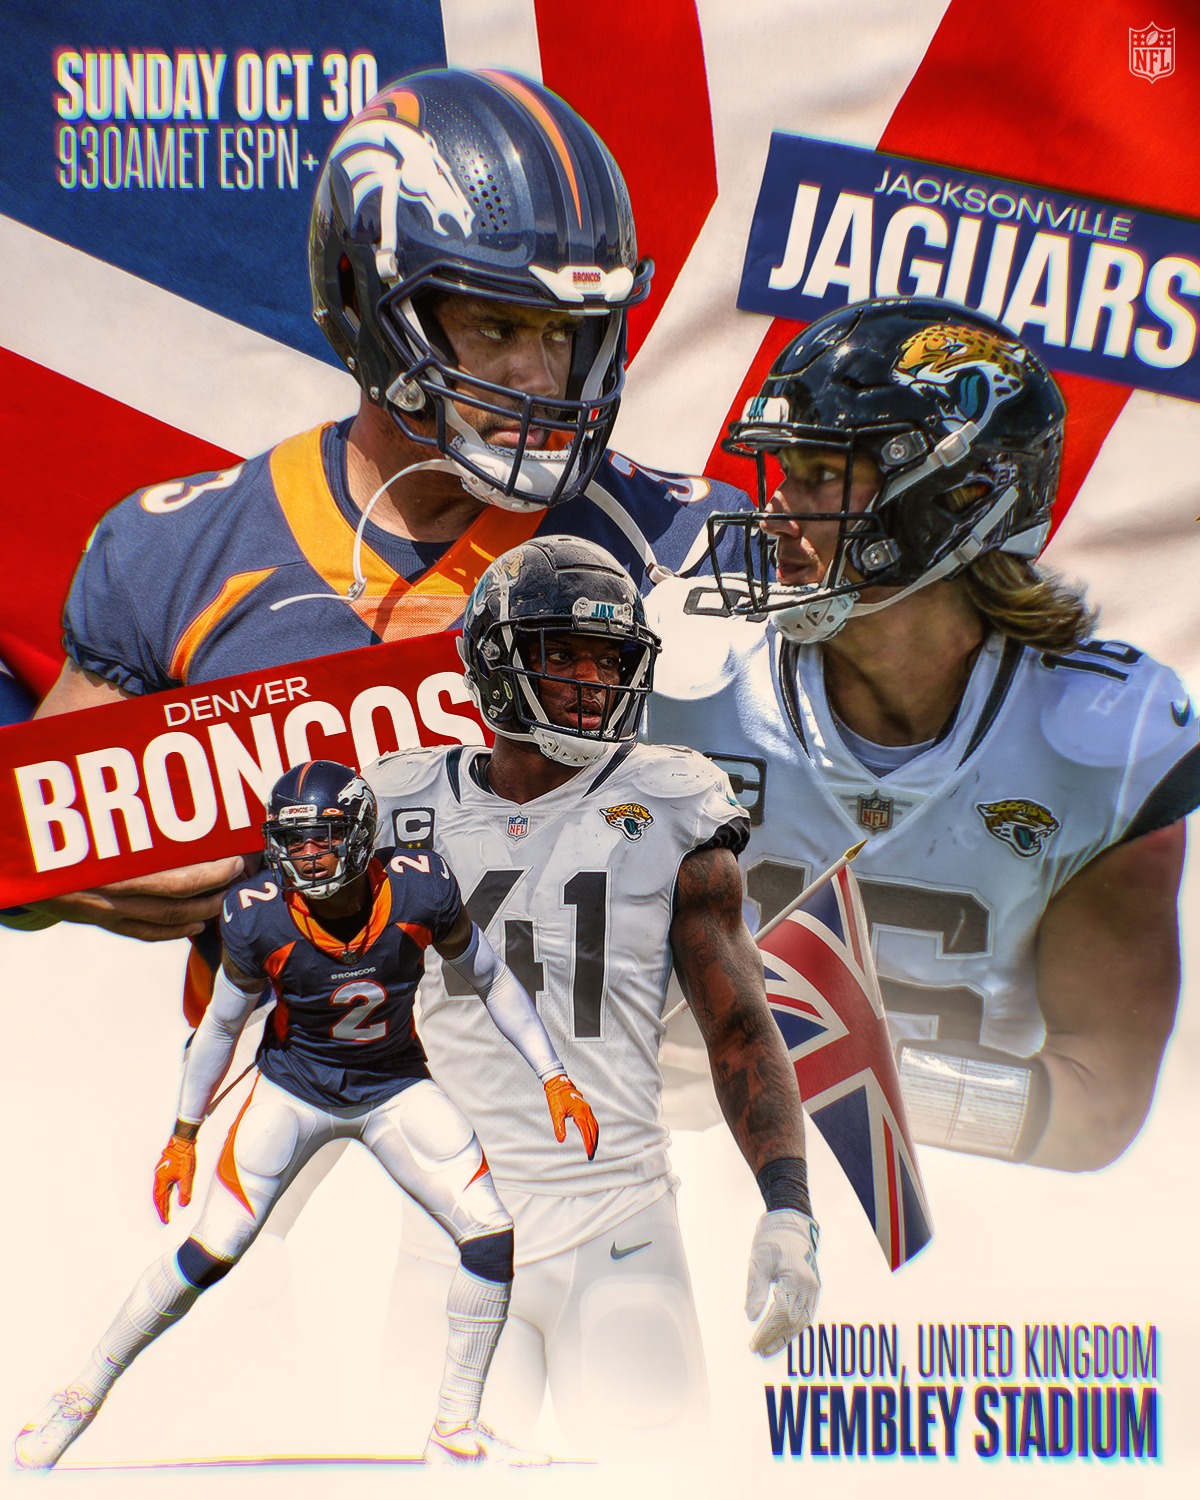 2022 NFL Schedule: Jacksonville Jaguars face Denver Broncos in London - Big  Cat Country